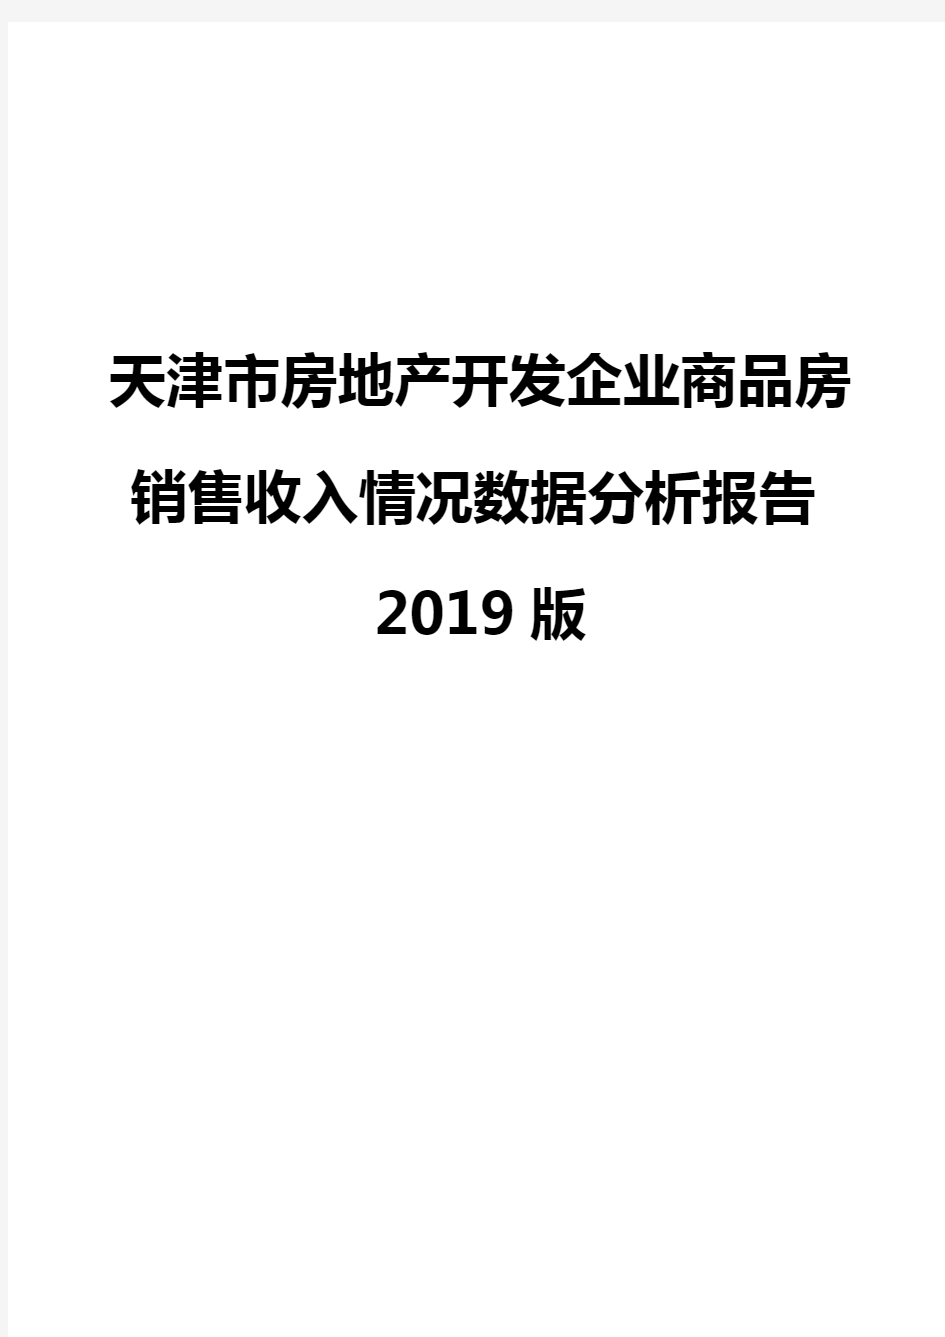 天津市房地产开发企业商品房销售收入情况数据分析报告2019版